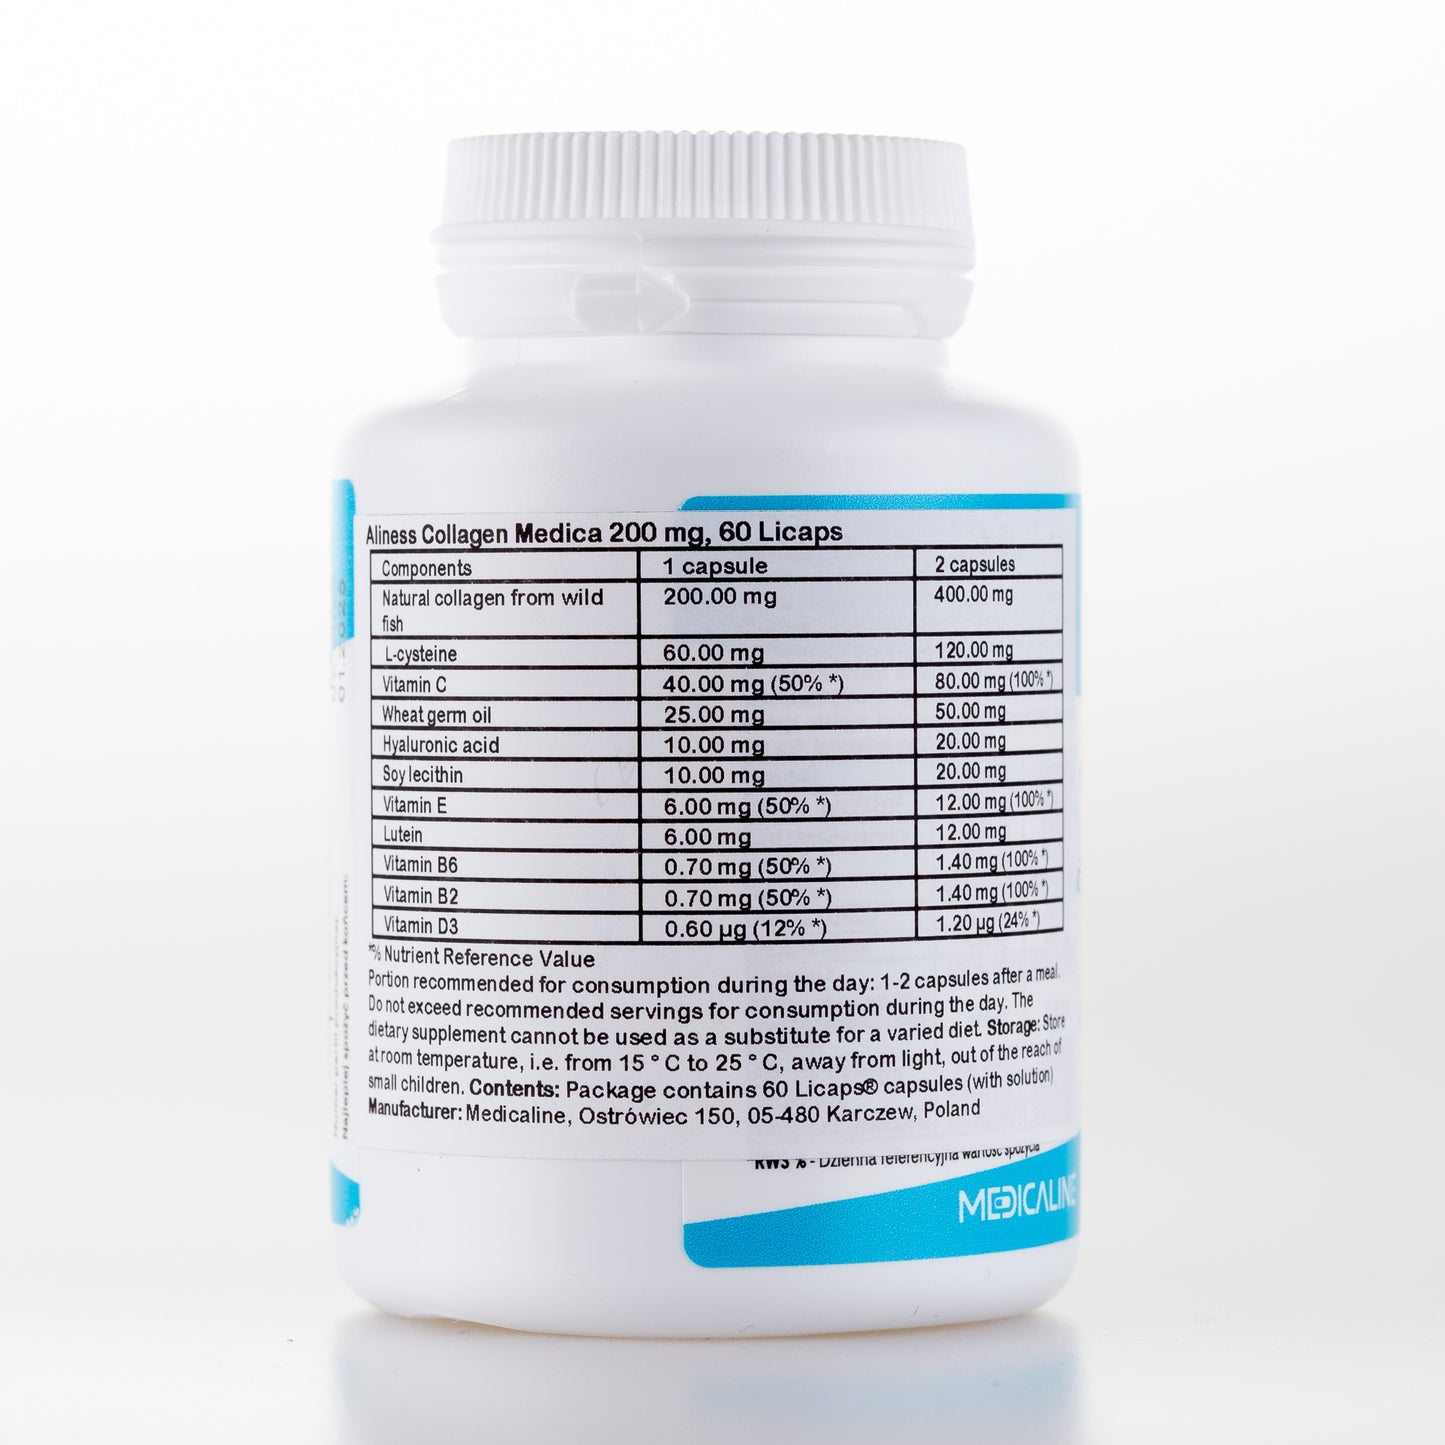 Collagen Medica 200 mg, 60LICAPS® capsules